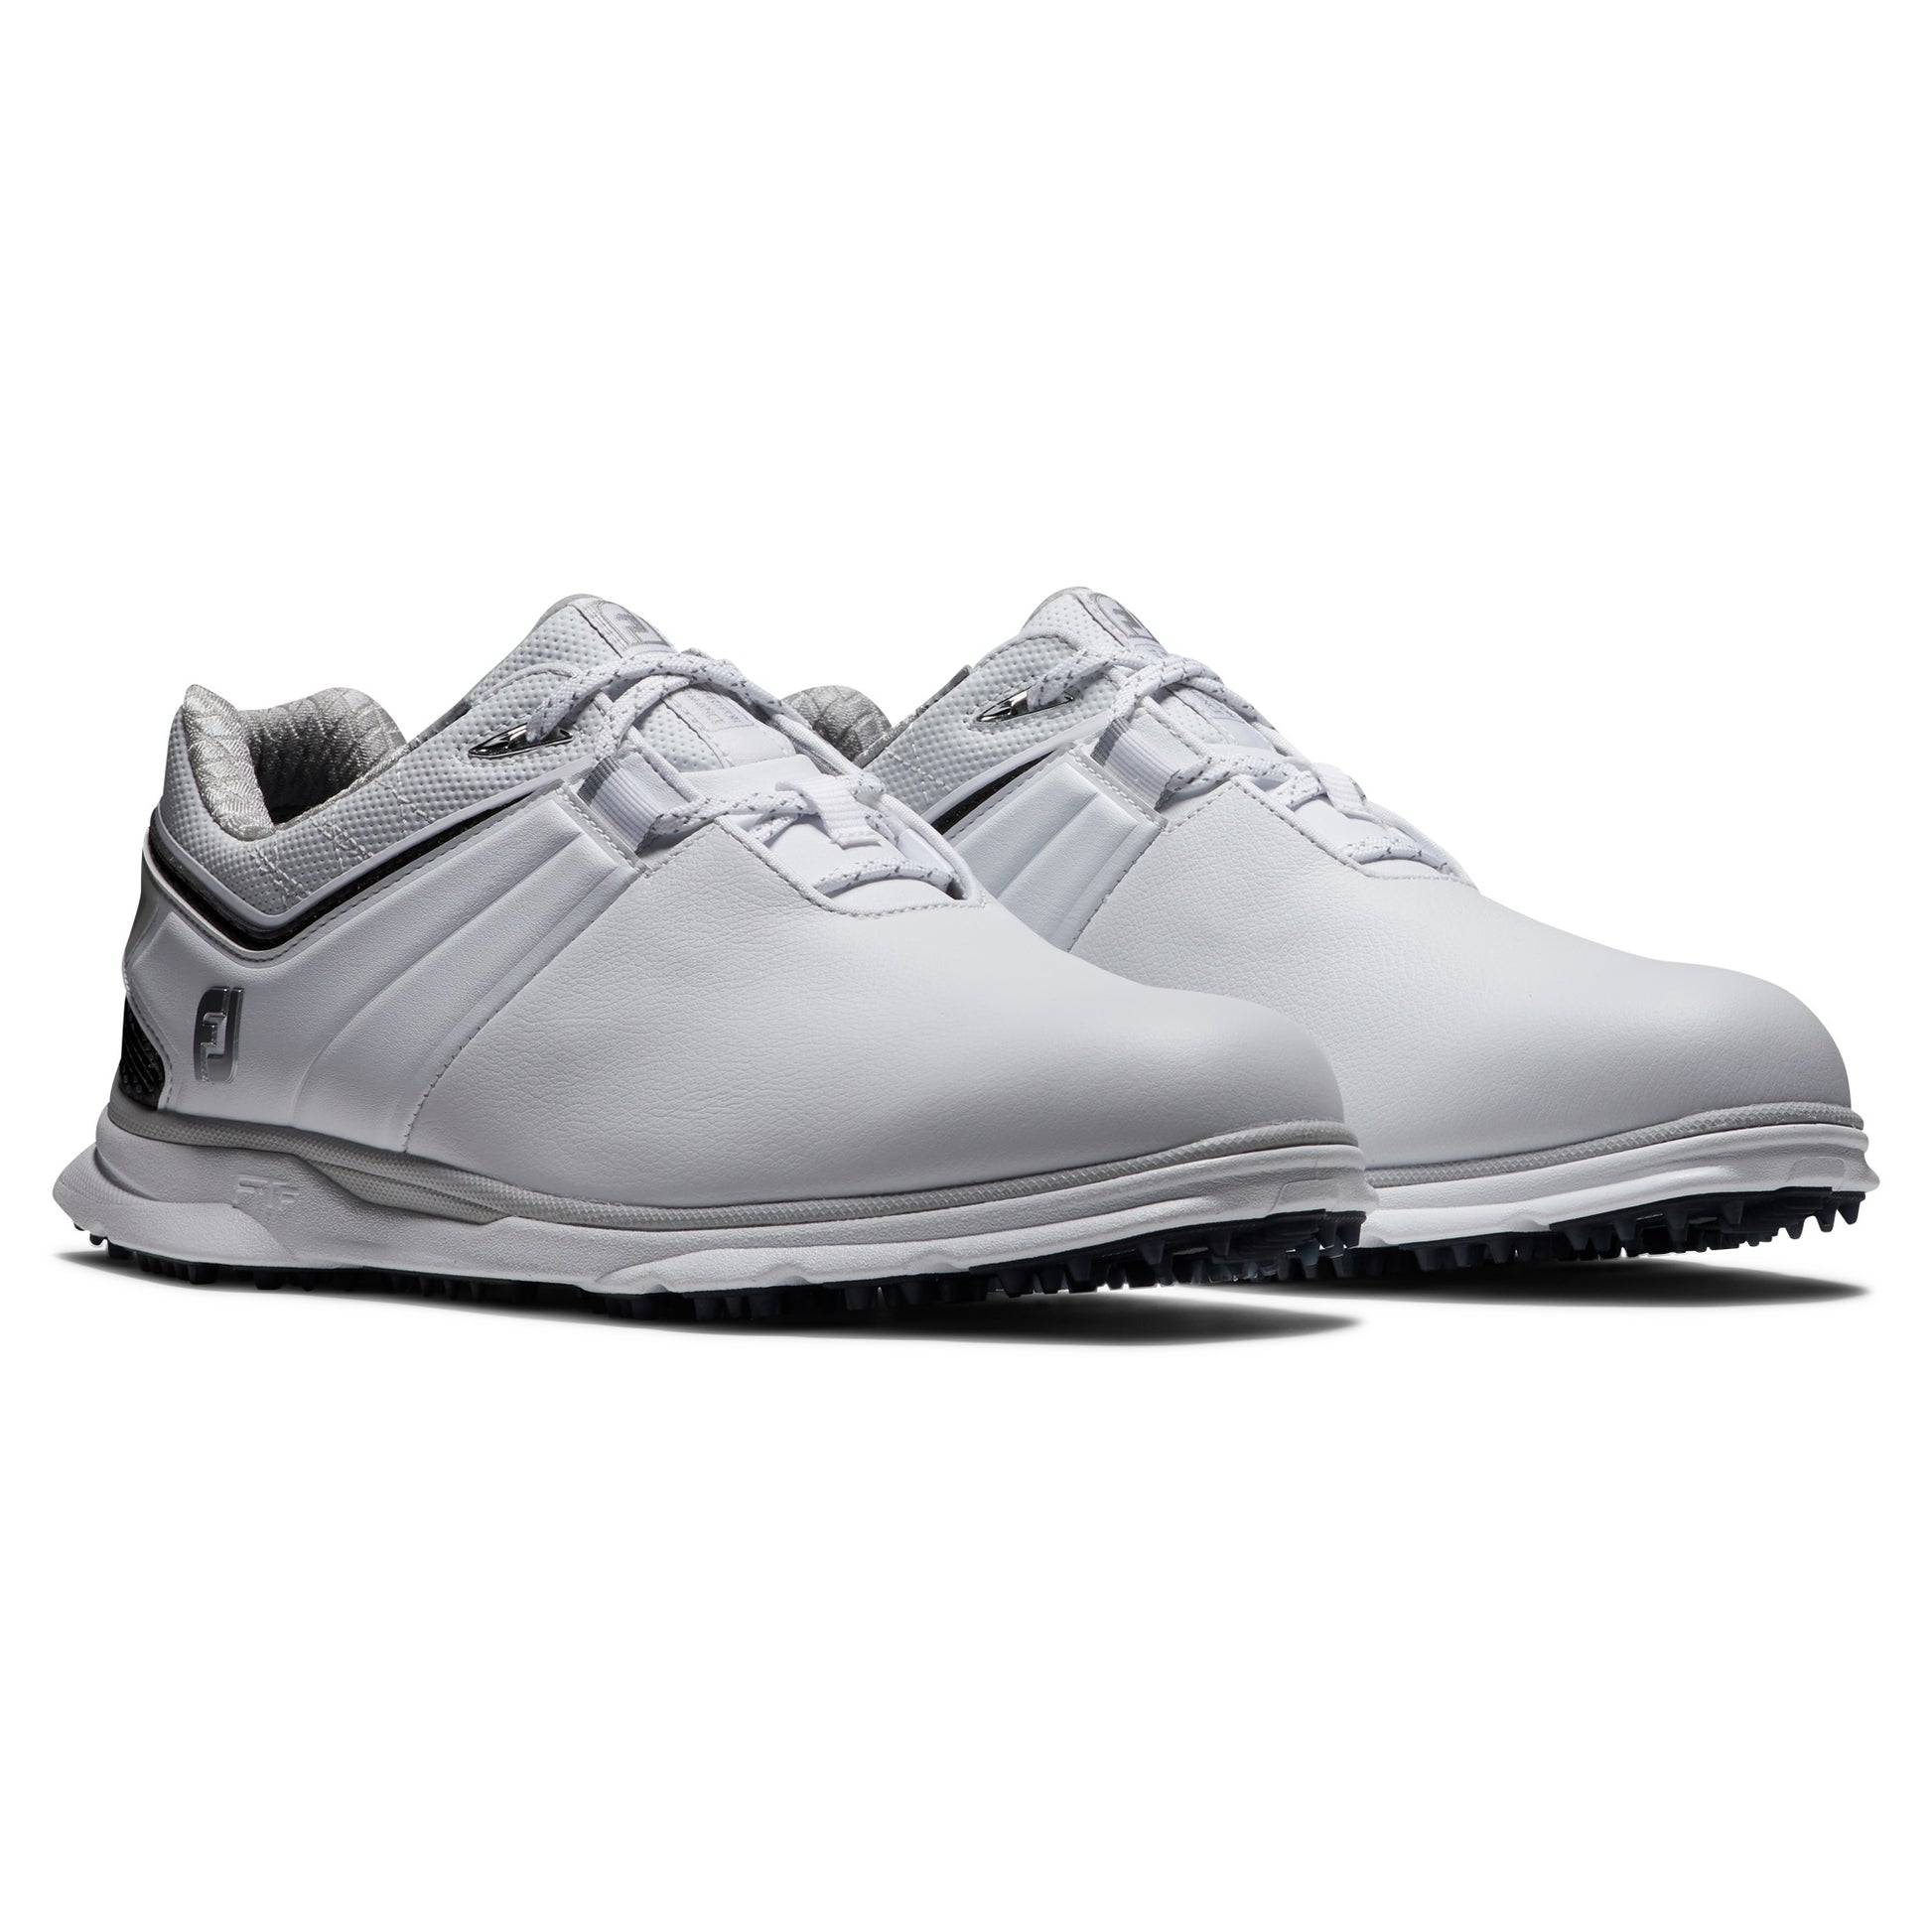 FootJoy Pro|SL Carbon Golf Shoes 53079 White/Navy (Previous Season Style)